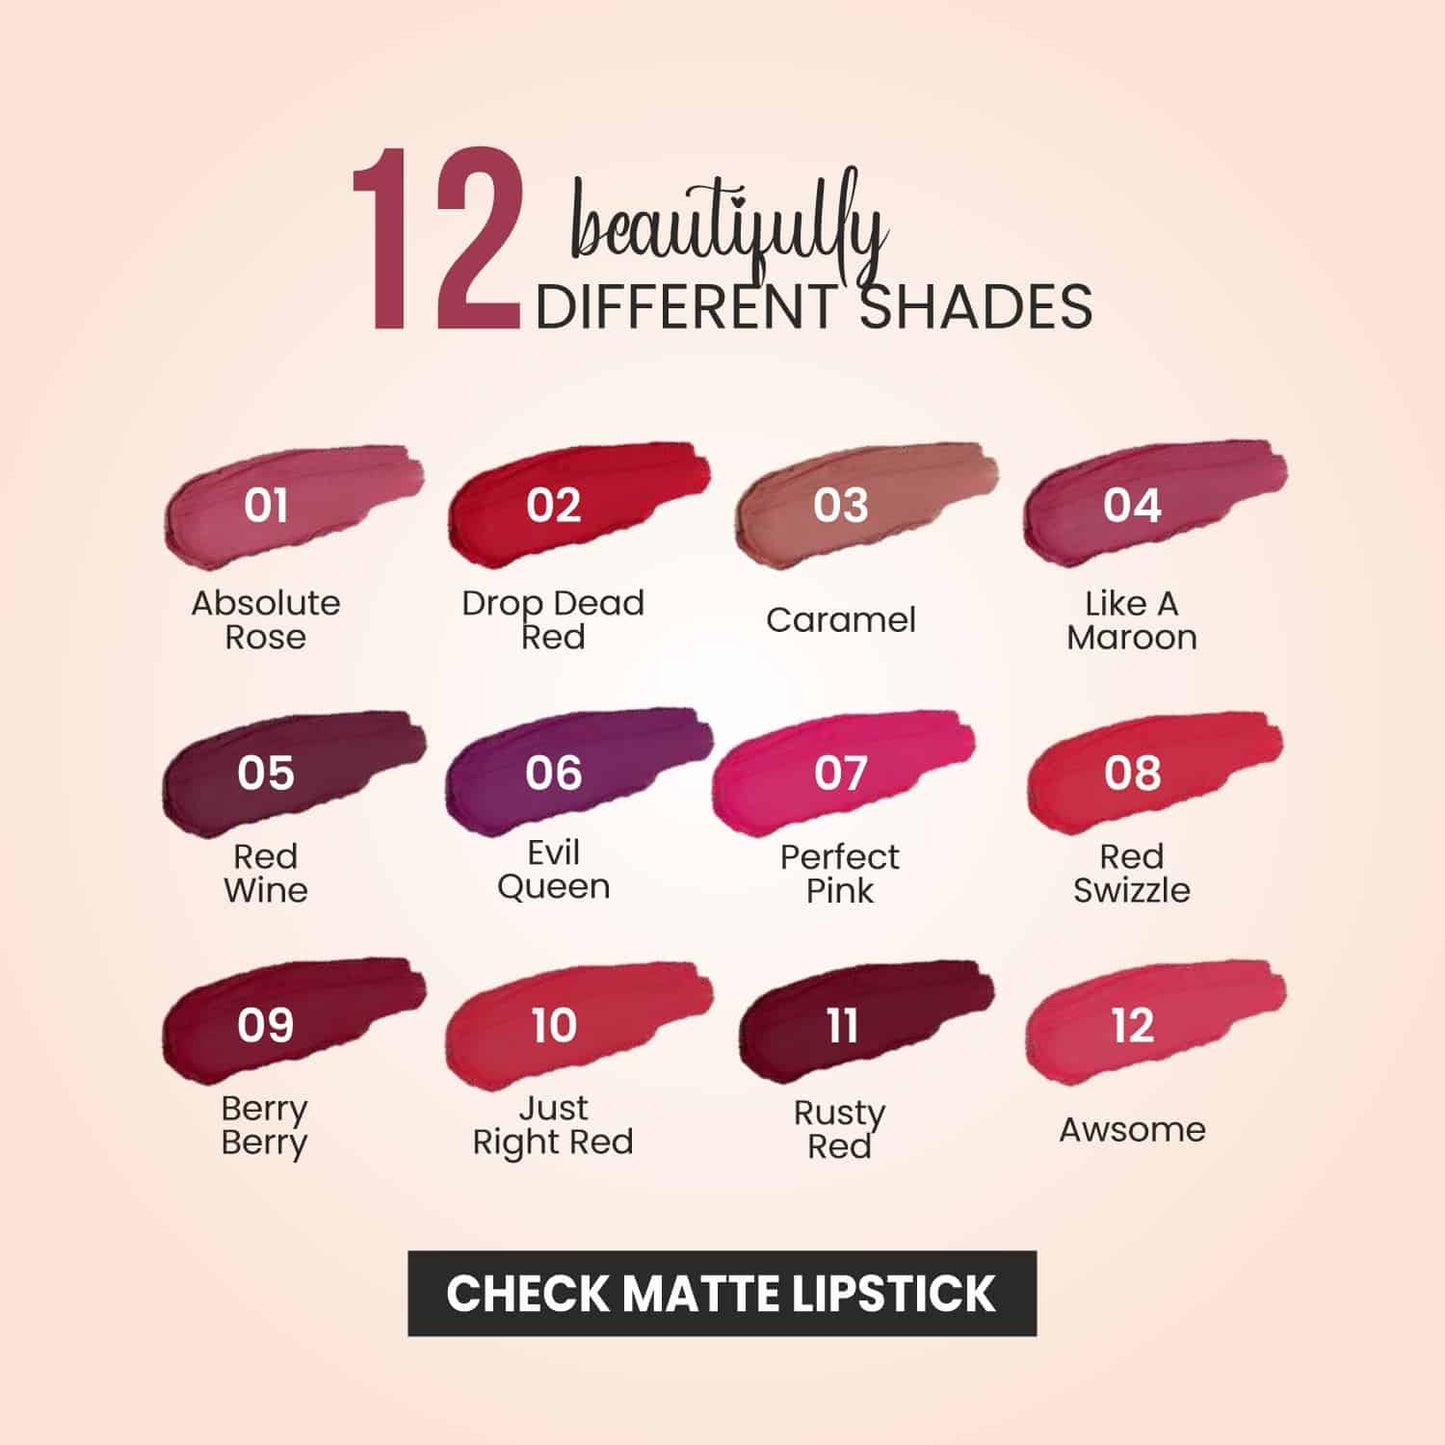 Check Matte Lipstick - 08 Red Swizzle